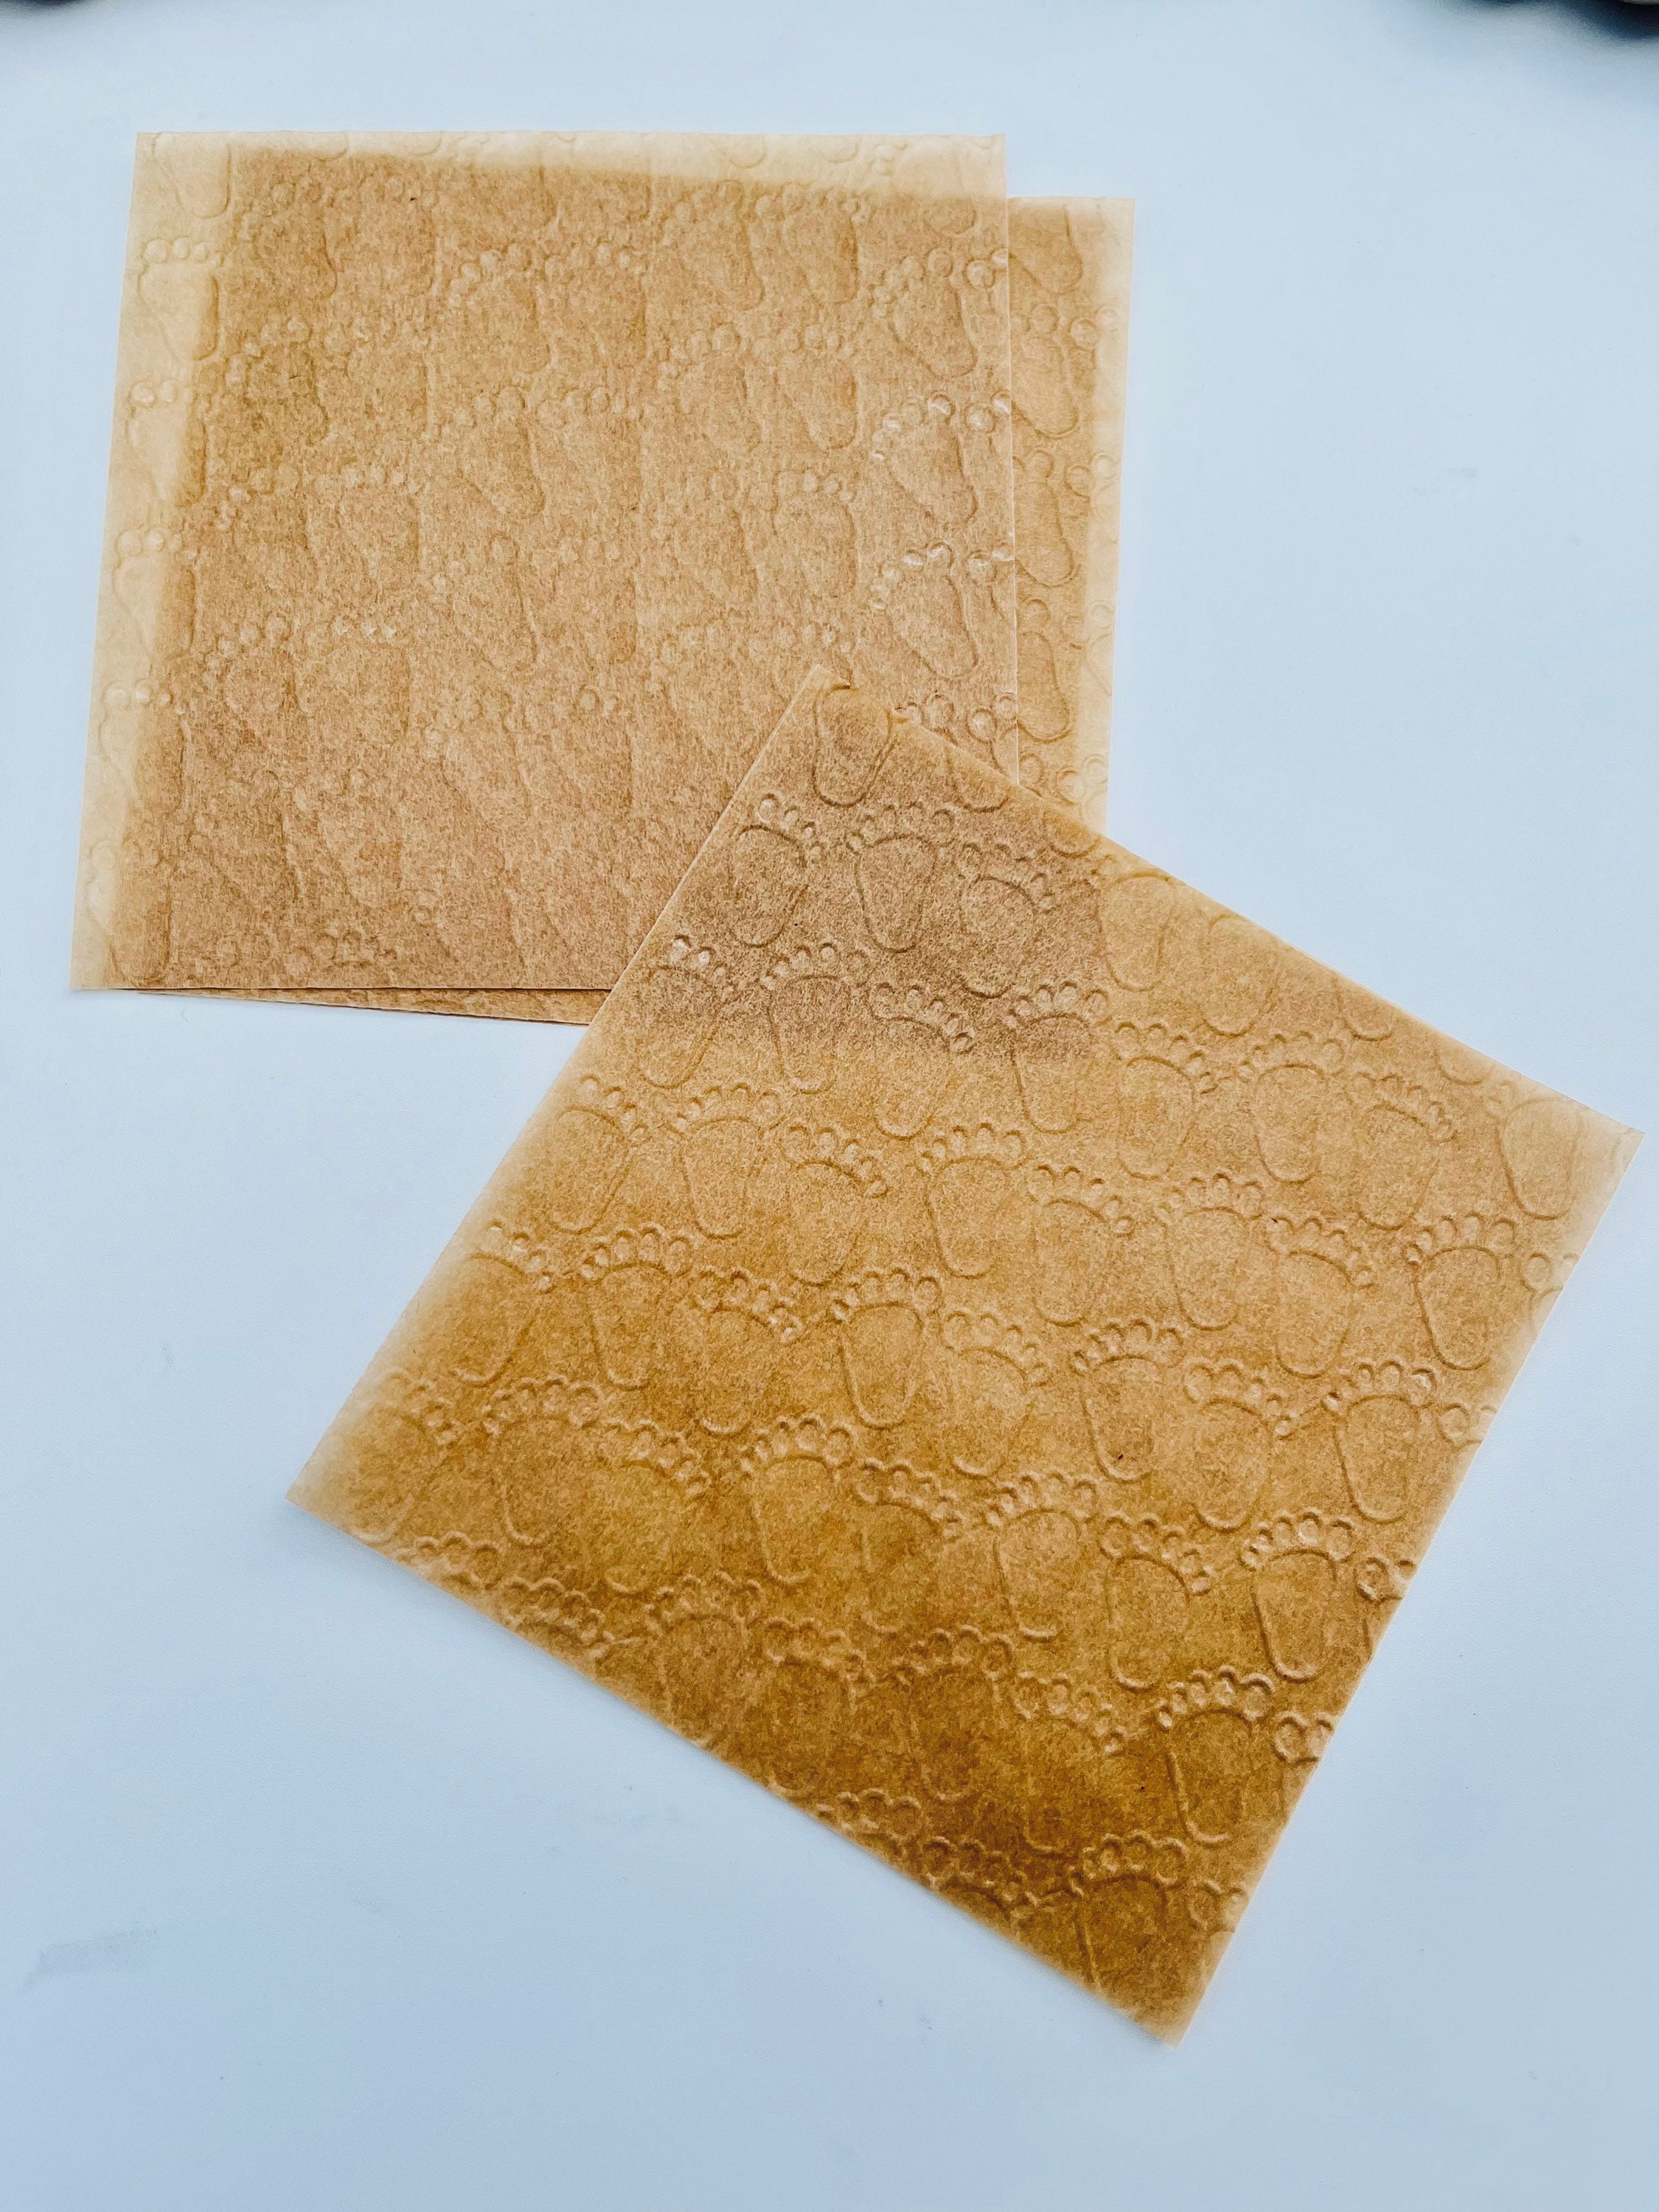 RAW Unrefined Parchment Paper (big roll) 30cm x 10 m/ 12 x 32ft